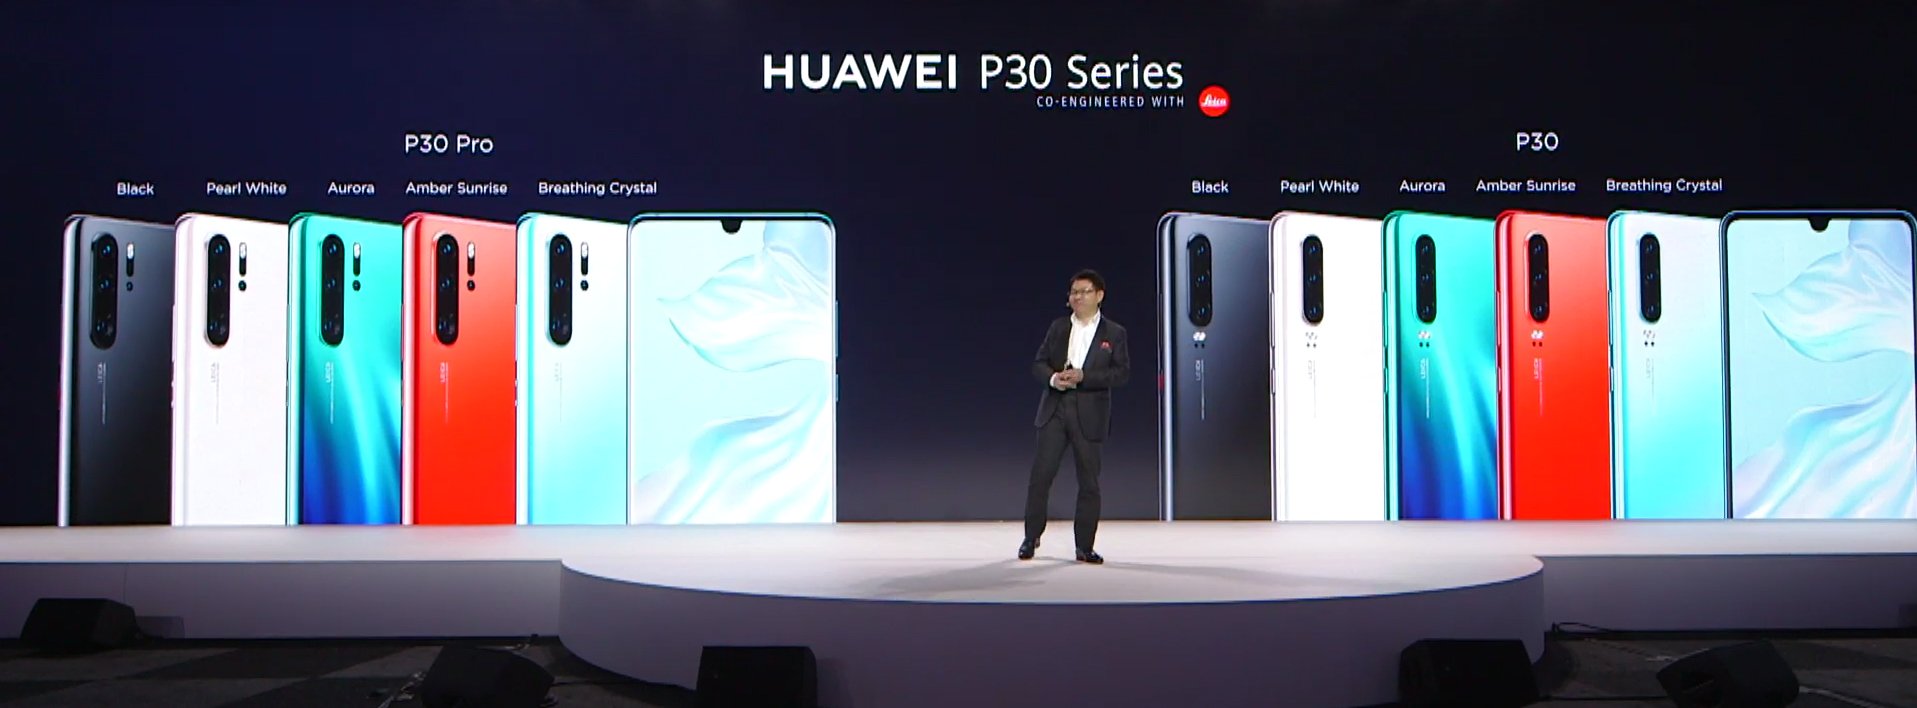 Image 1 : P30, P30 Pro, lunettes connectées... : on fait le point sur les nouveautés Huawei présentées à Paris